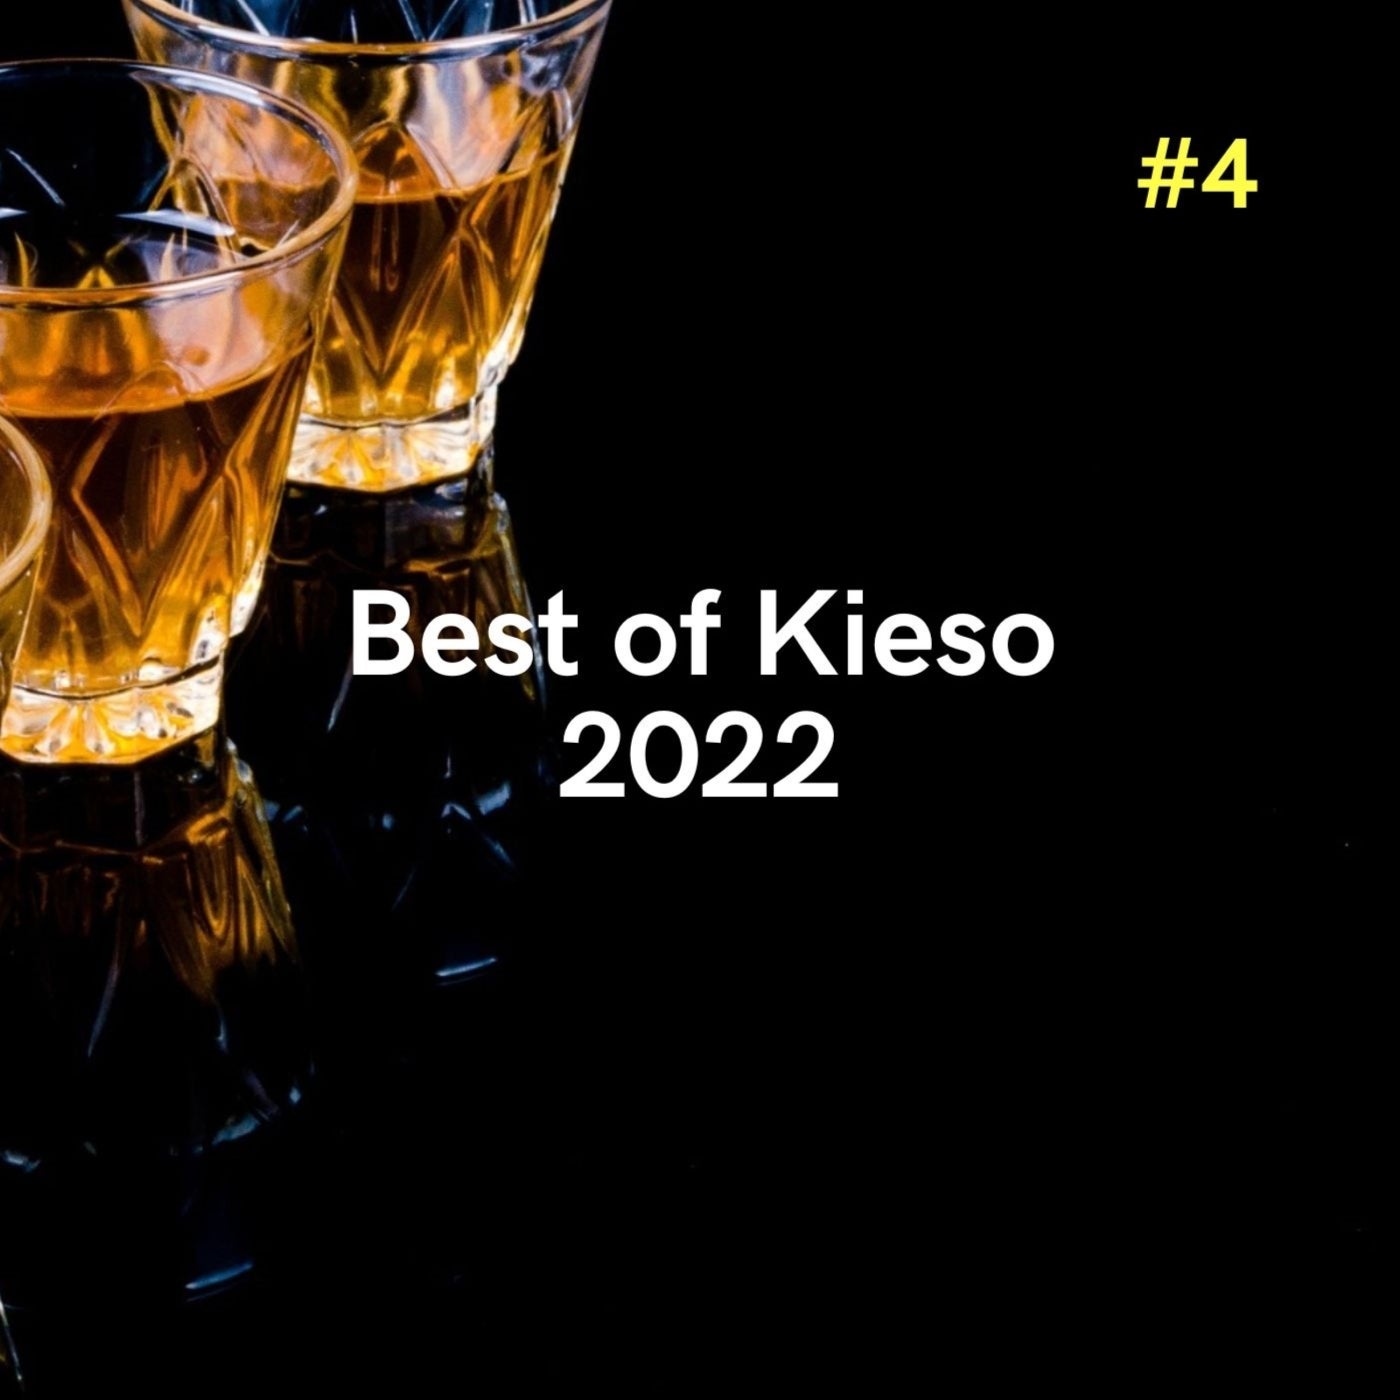 Best of Kieso 2022 #4